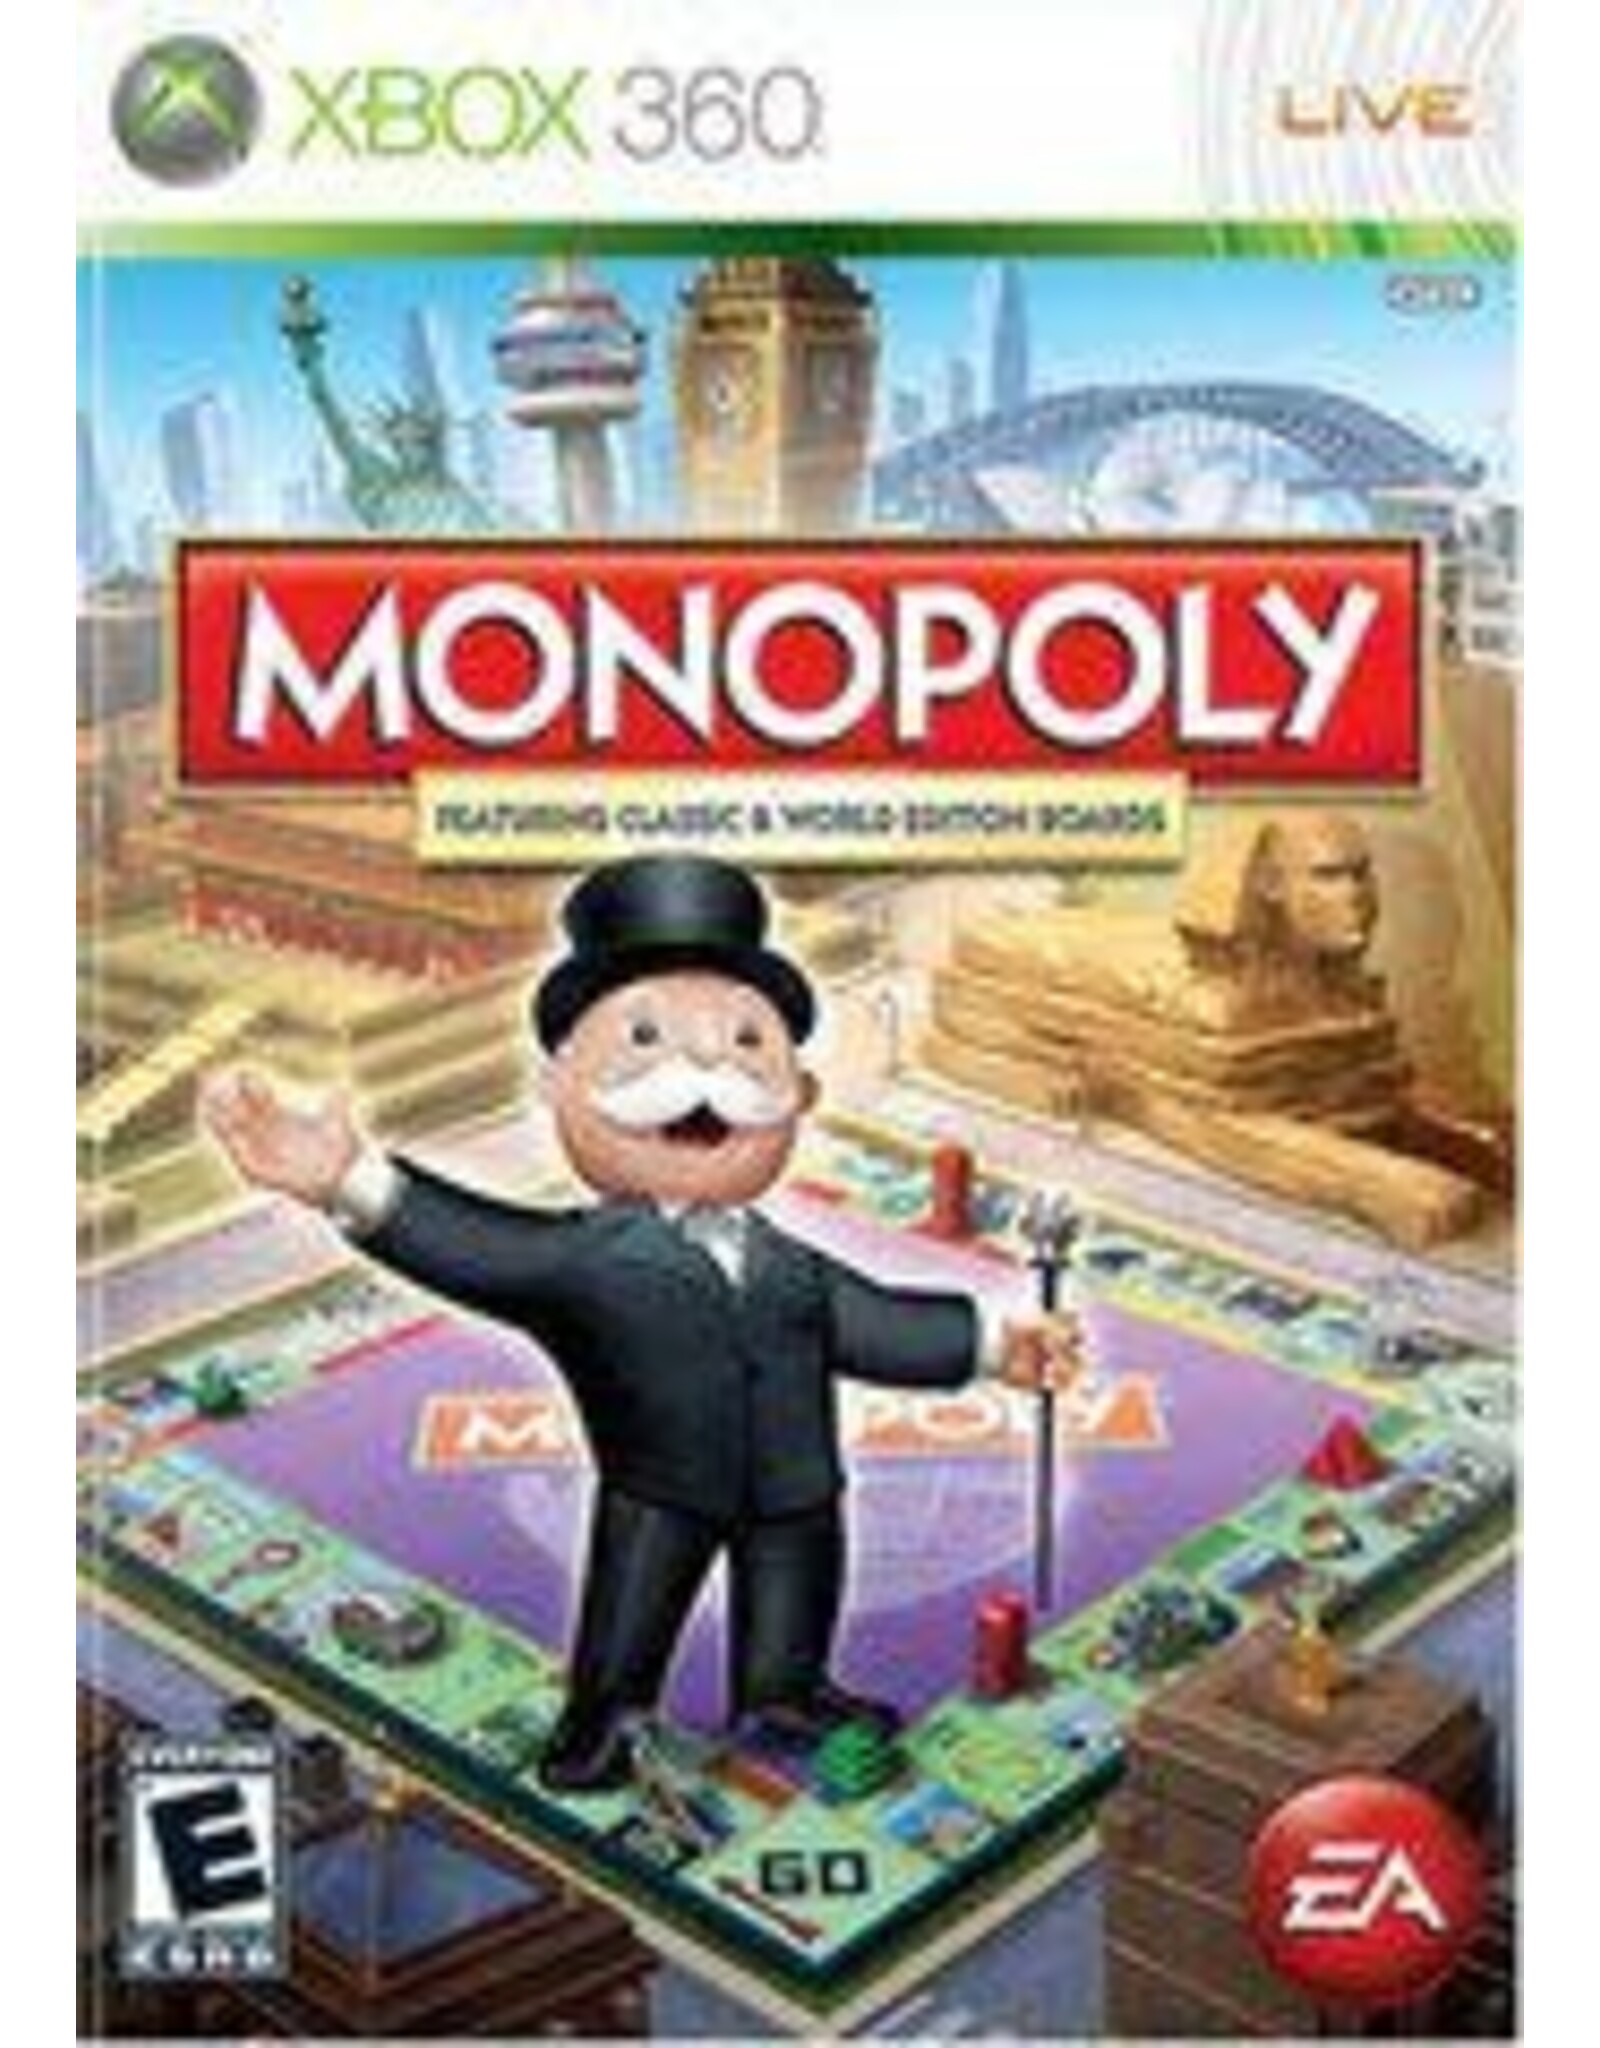 Xbox 360 Monopoly (Used)